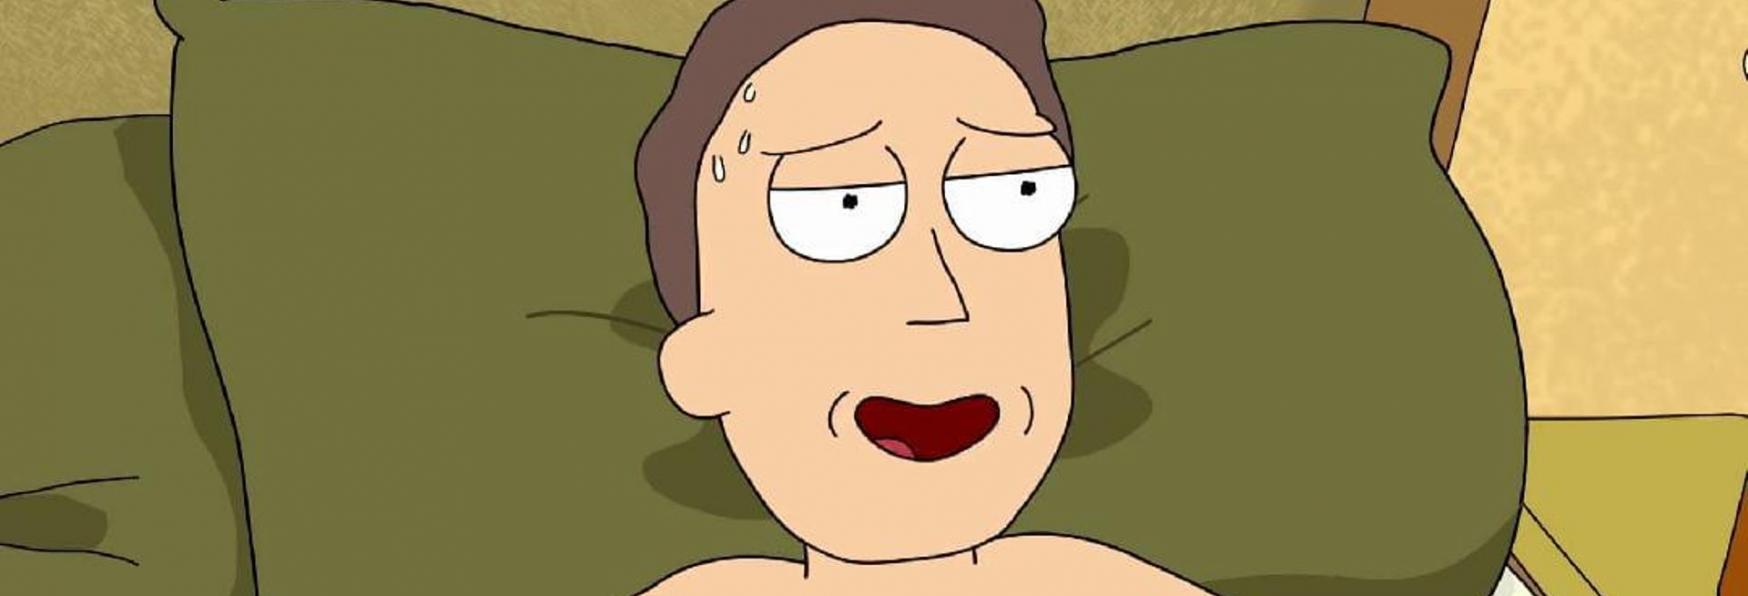 Rick and Morty 5: la nuova Stagione esplorerà la Vita Sessuale di Jerry e Beth